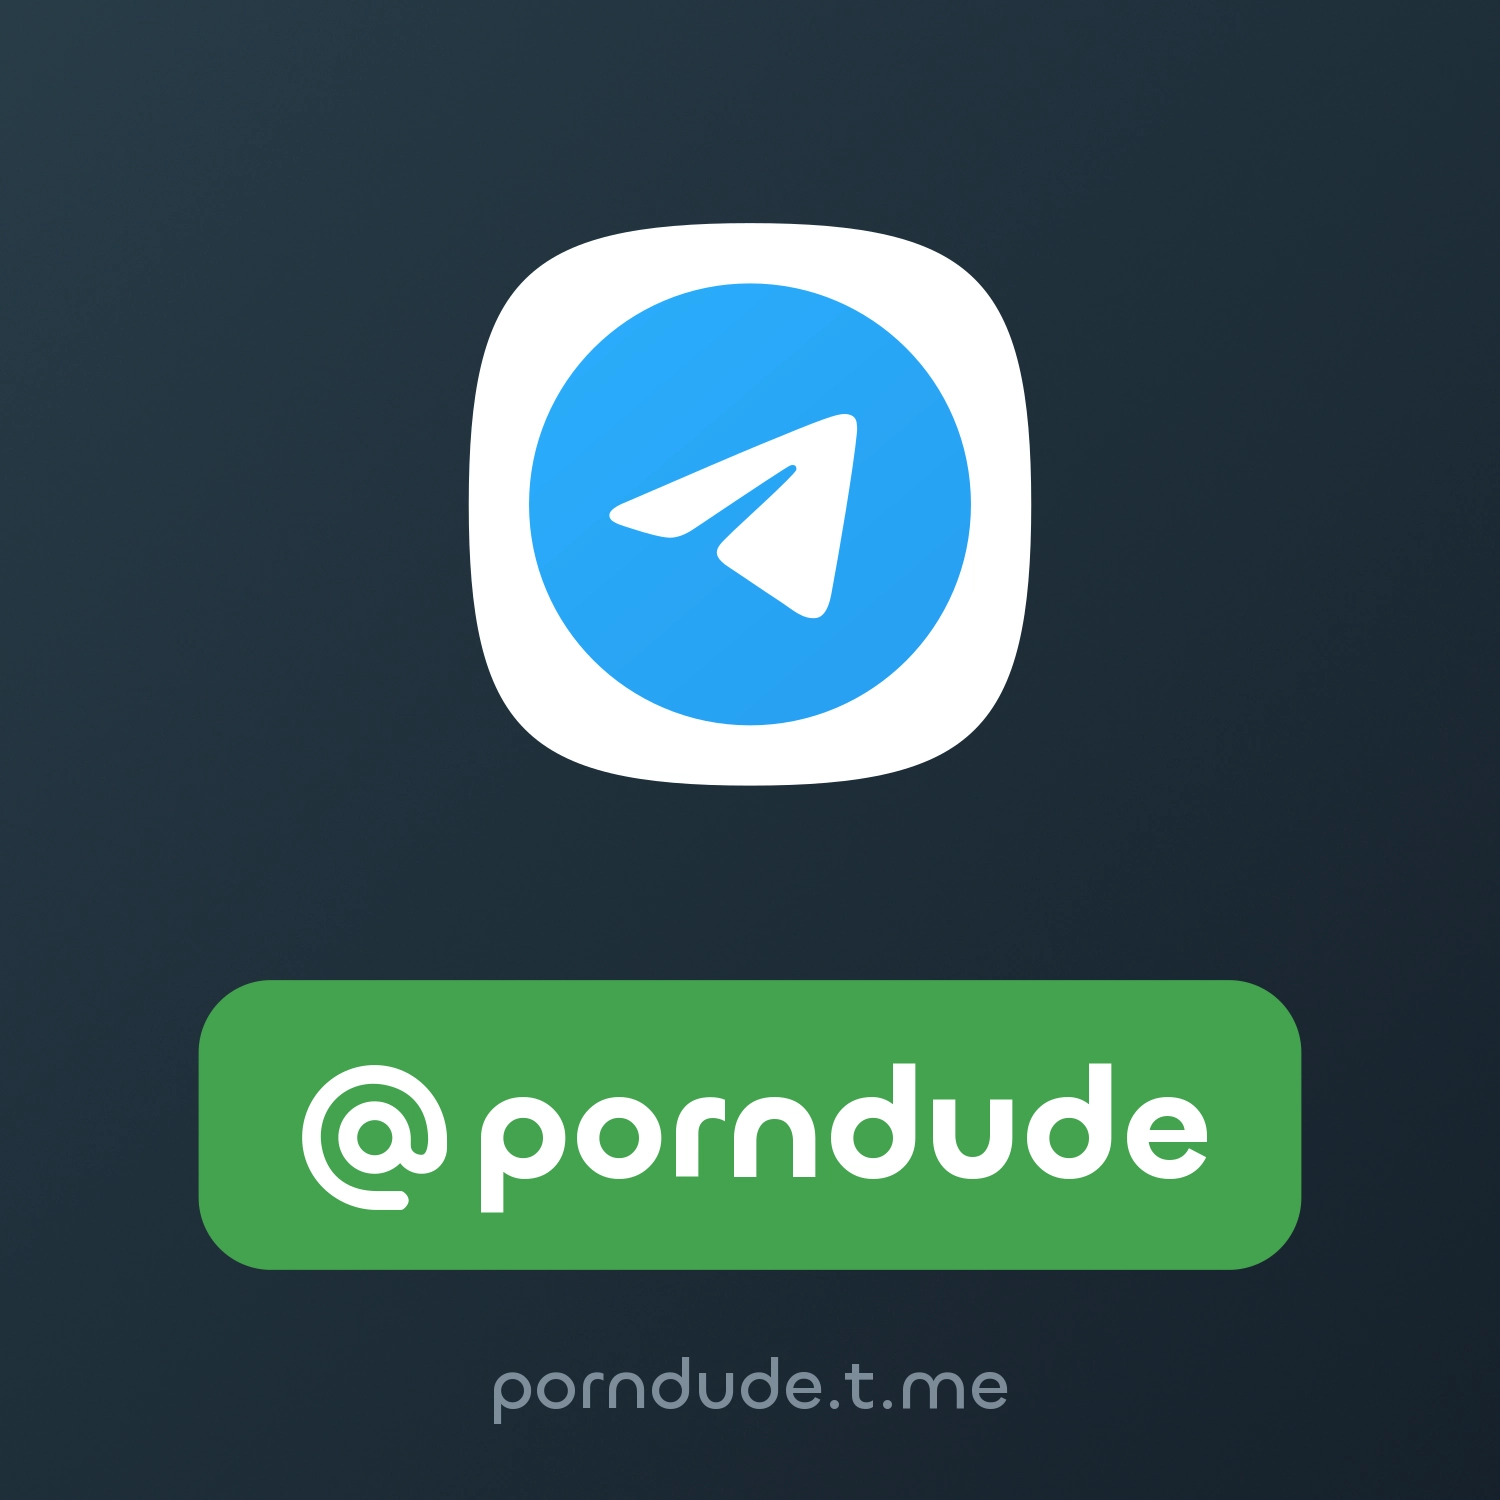 Porn Dude App Download - porndude â€“ Fragment